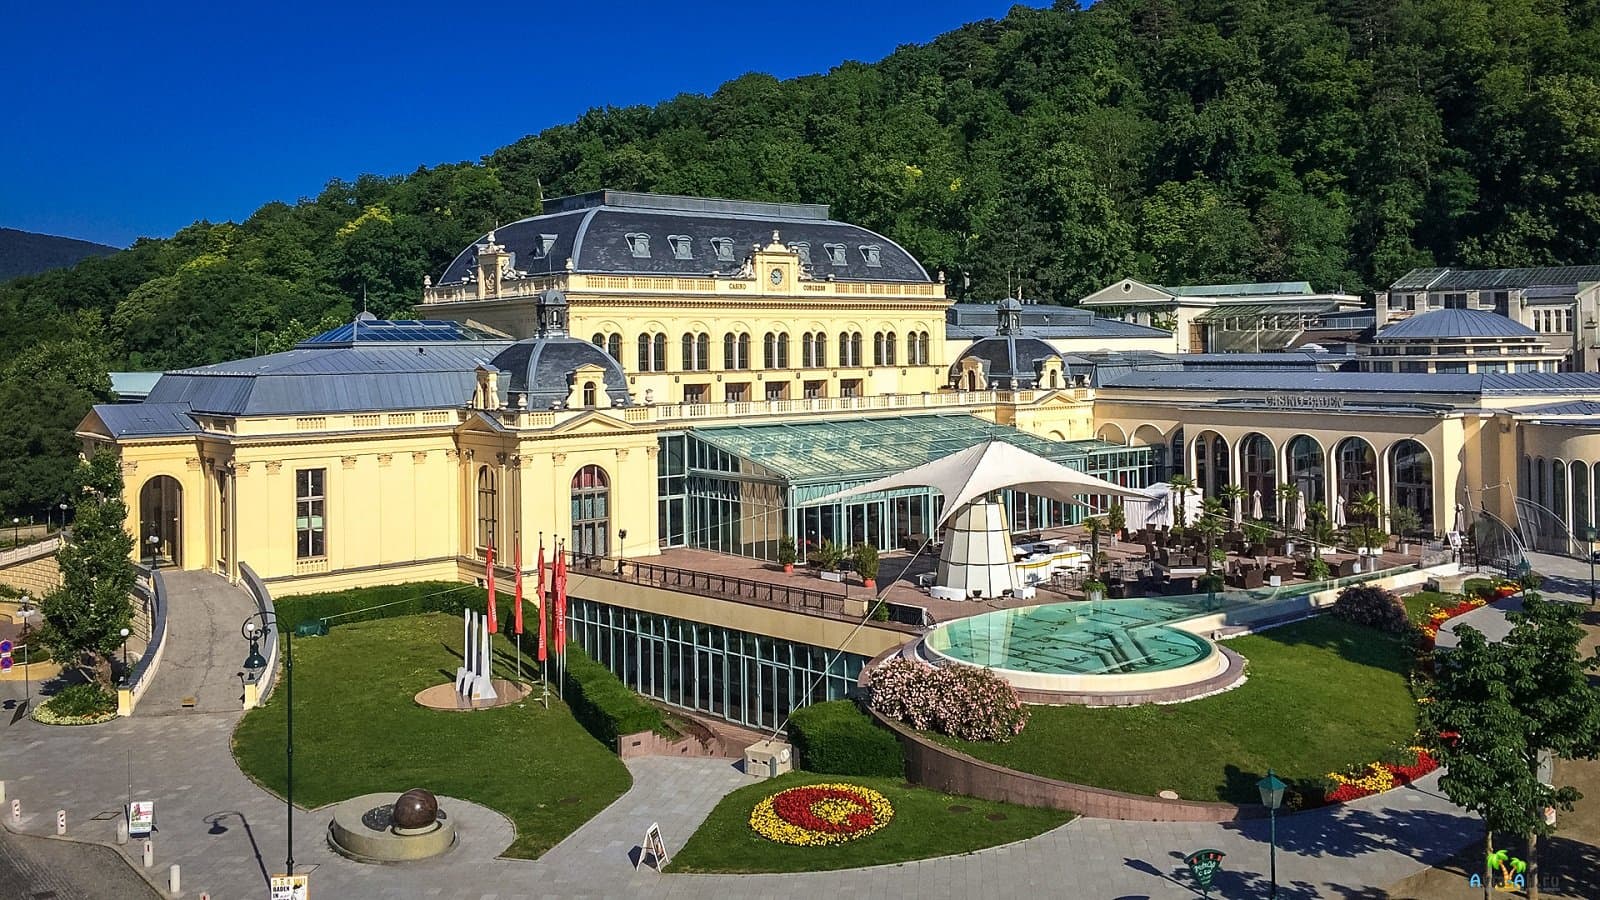 
Glücksspiel und Online-Casinos in Österreich